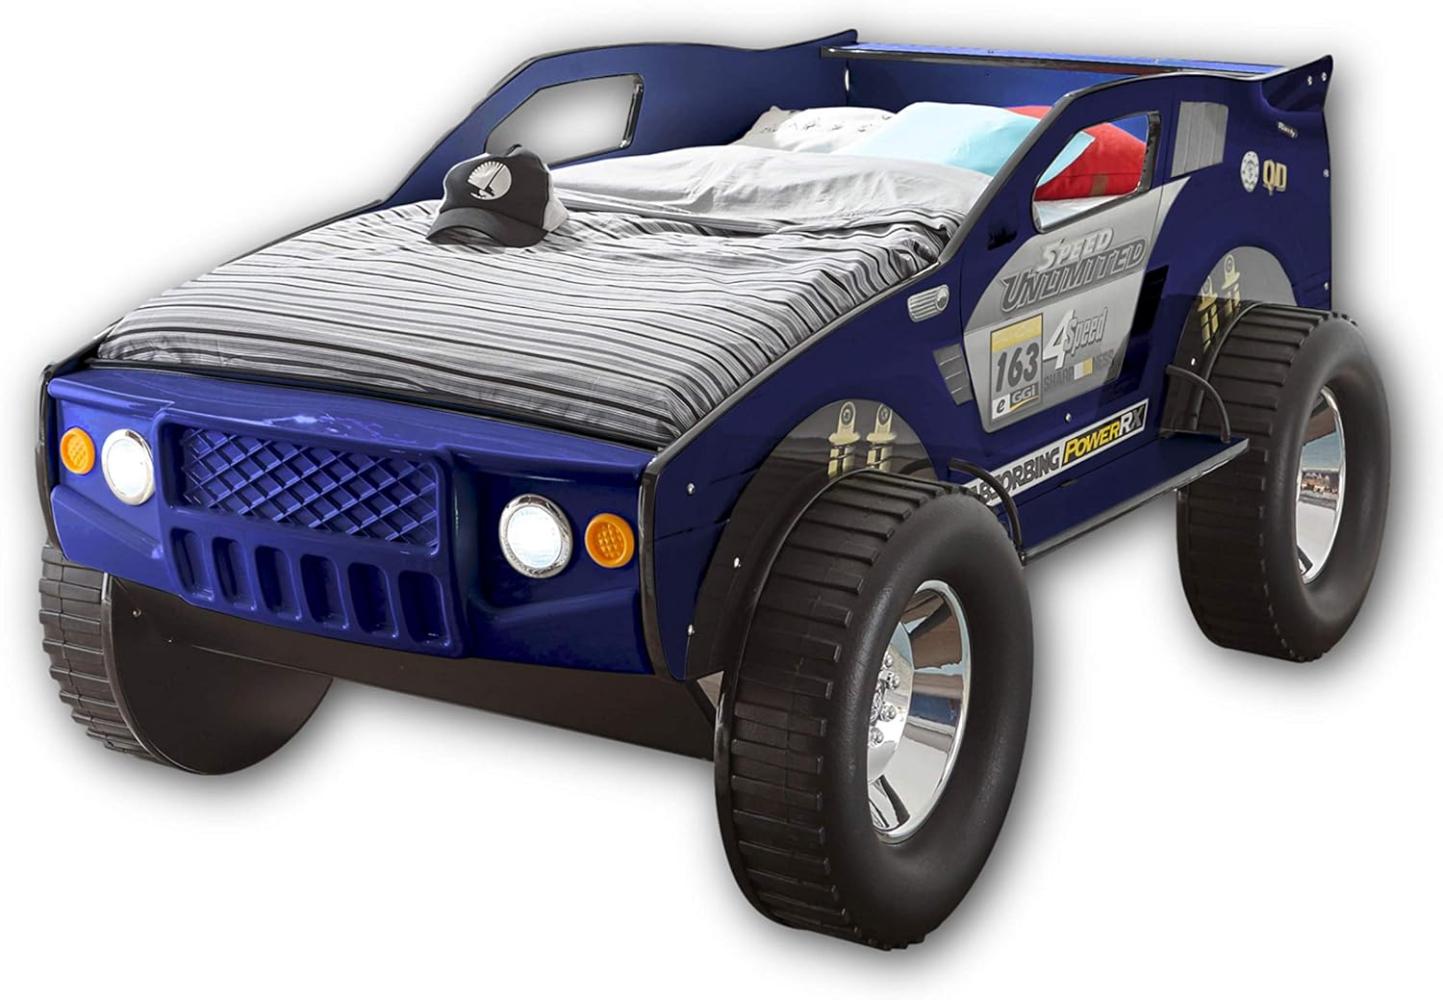 Stella Trading JEEP Autobett mit LED-Beleuchtung 90 x 200 cm - Aufregendes und hohes SUV Auto Kinderbett für kleine Rennfahrer in Blau - 120 x 81 x 211 cm (B/H/T) Bild 1